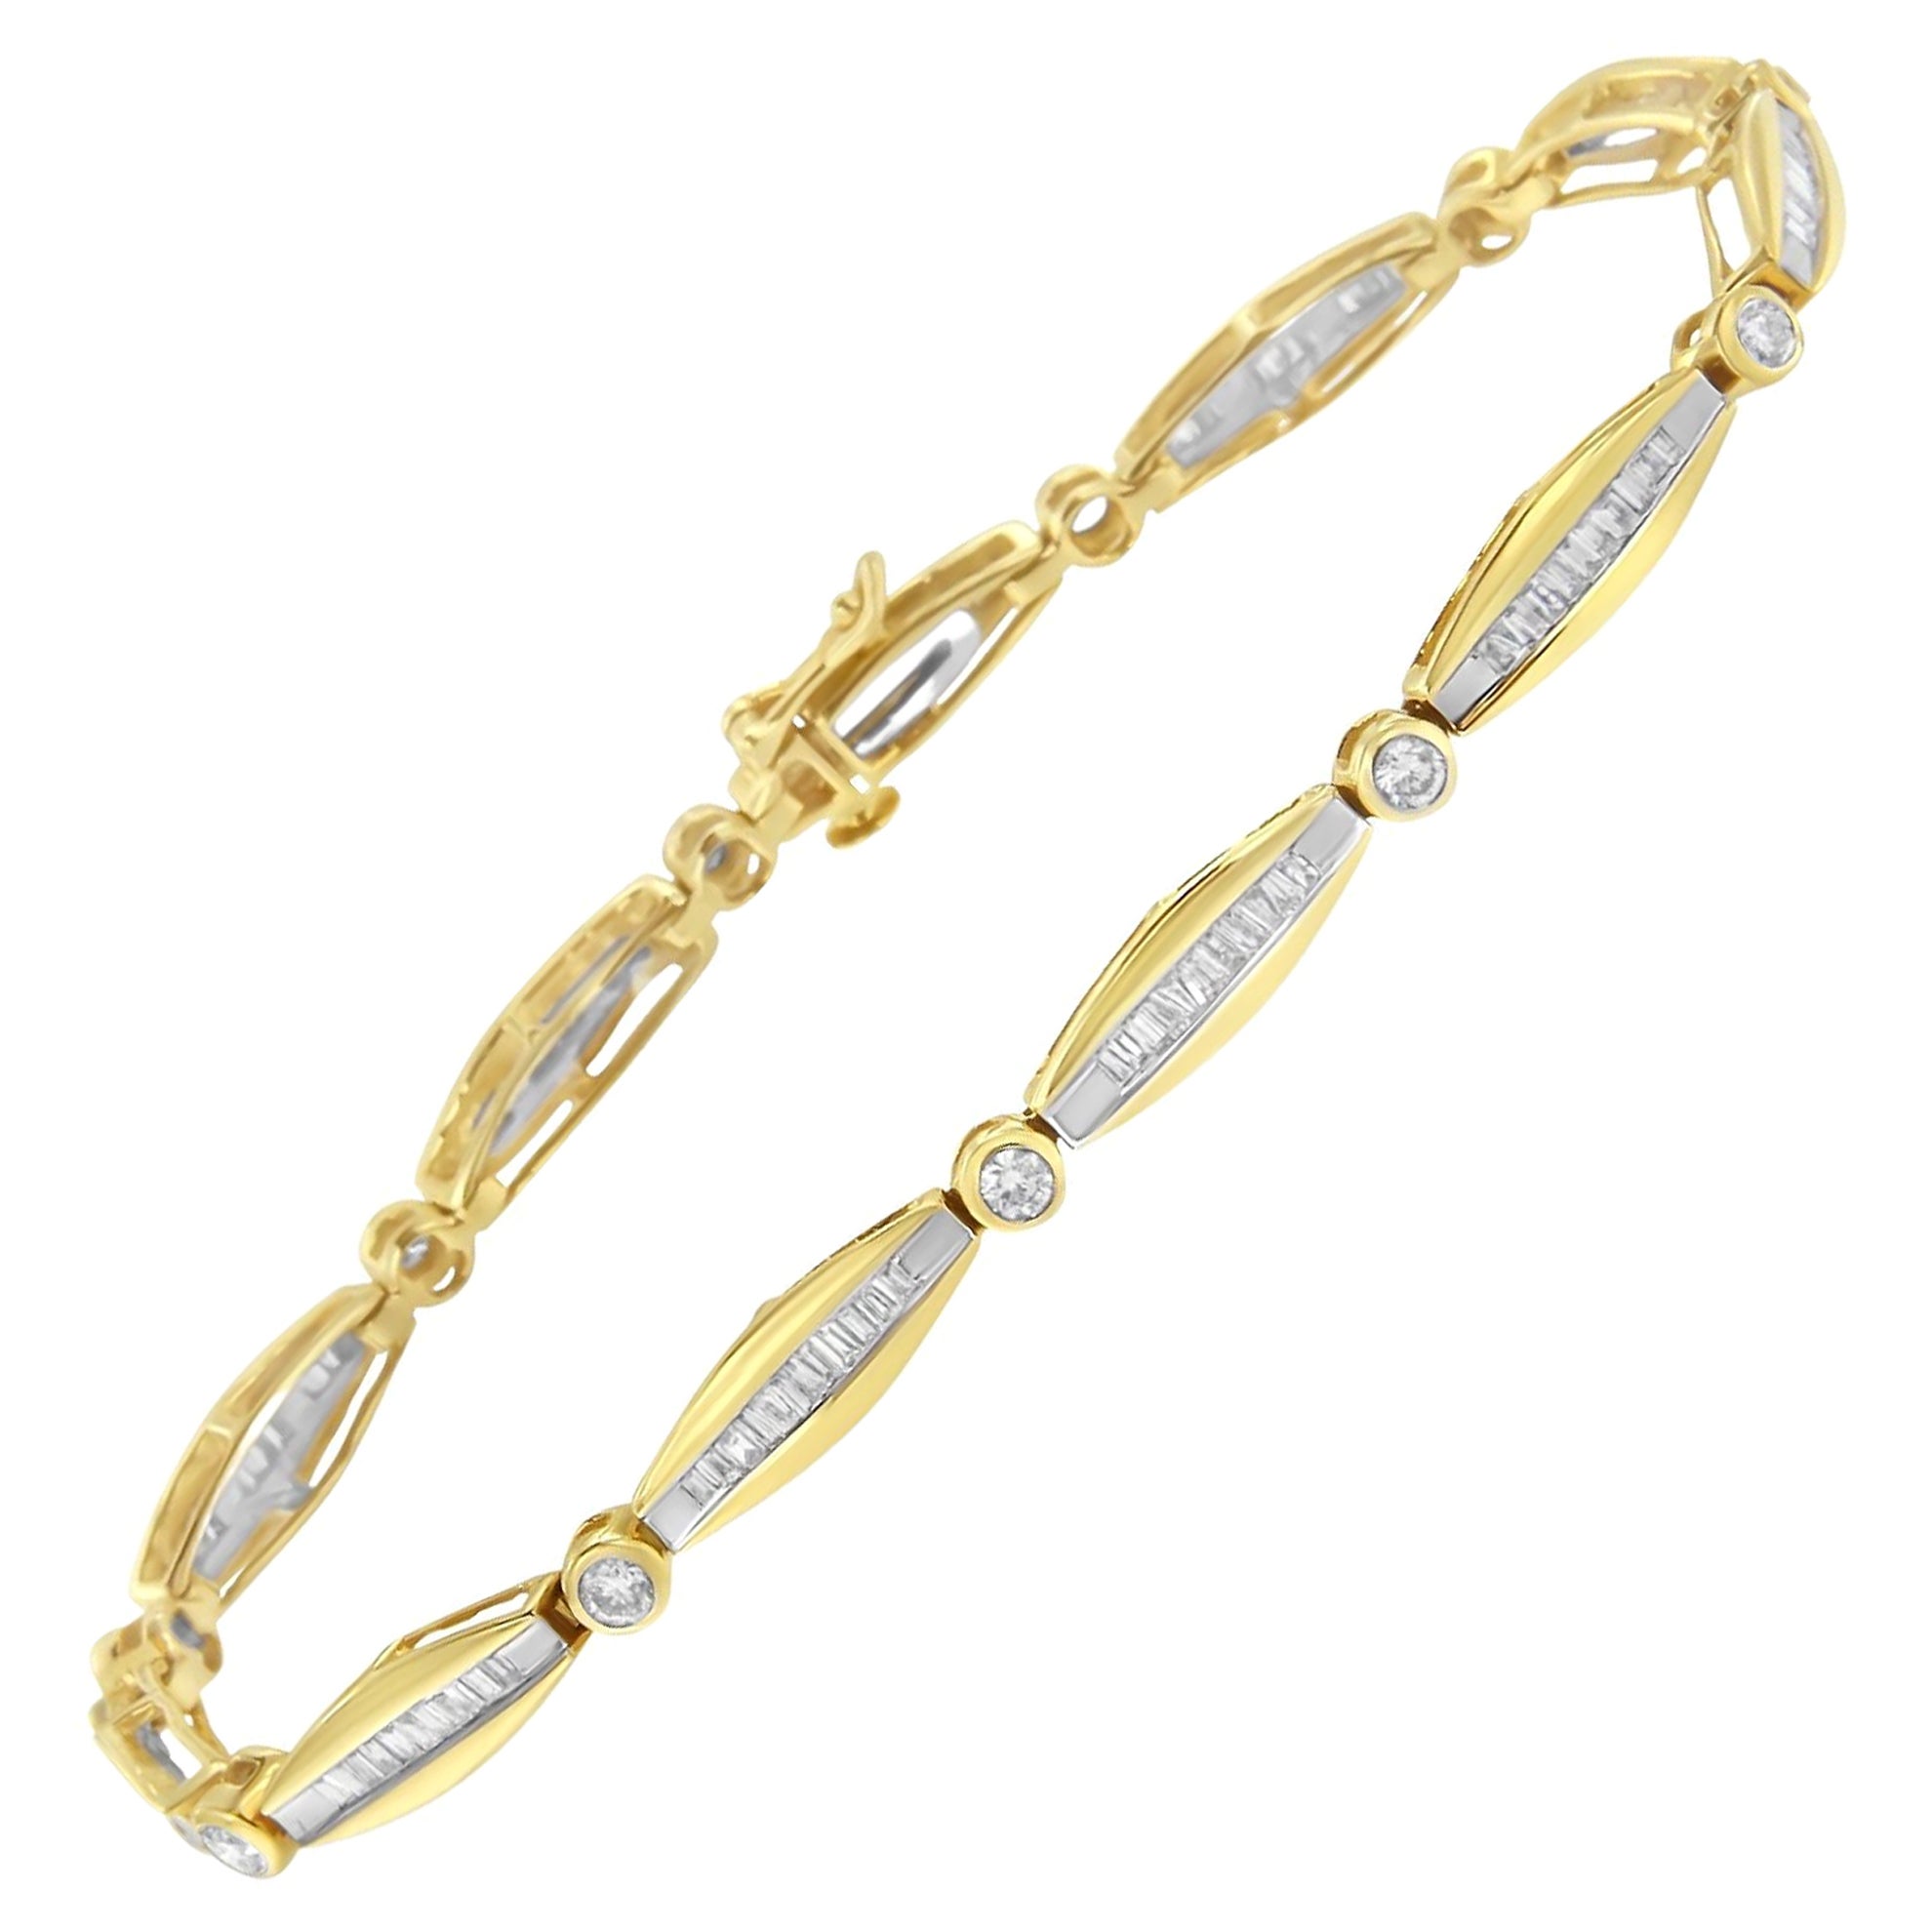 Bracelet tennis à maillons effilés en or jaune 14 carats avec lunette en diamants ronds de 1,1/2 carat